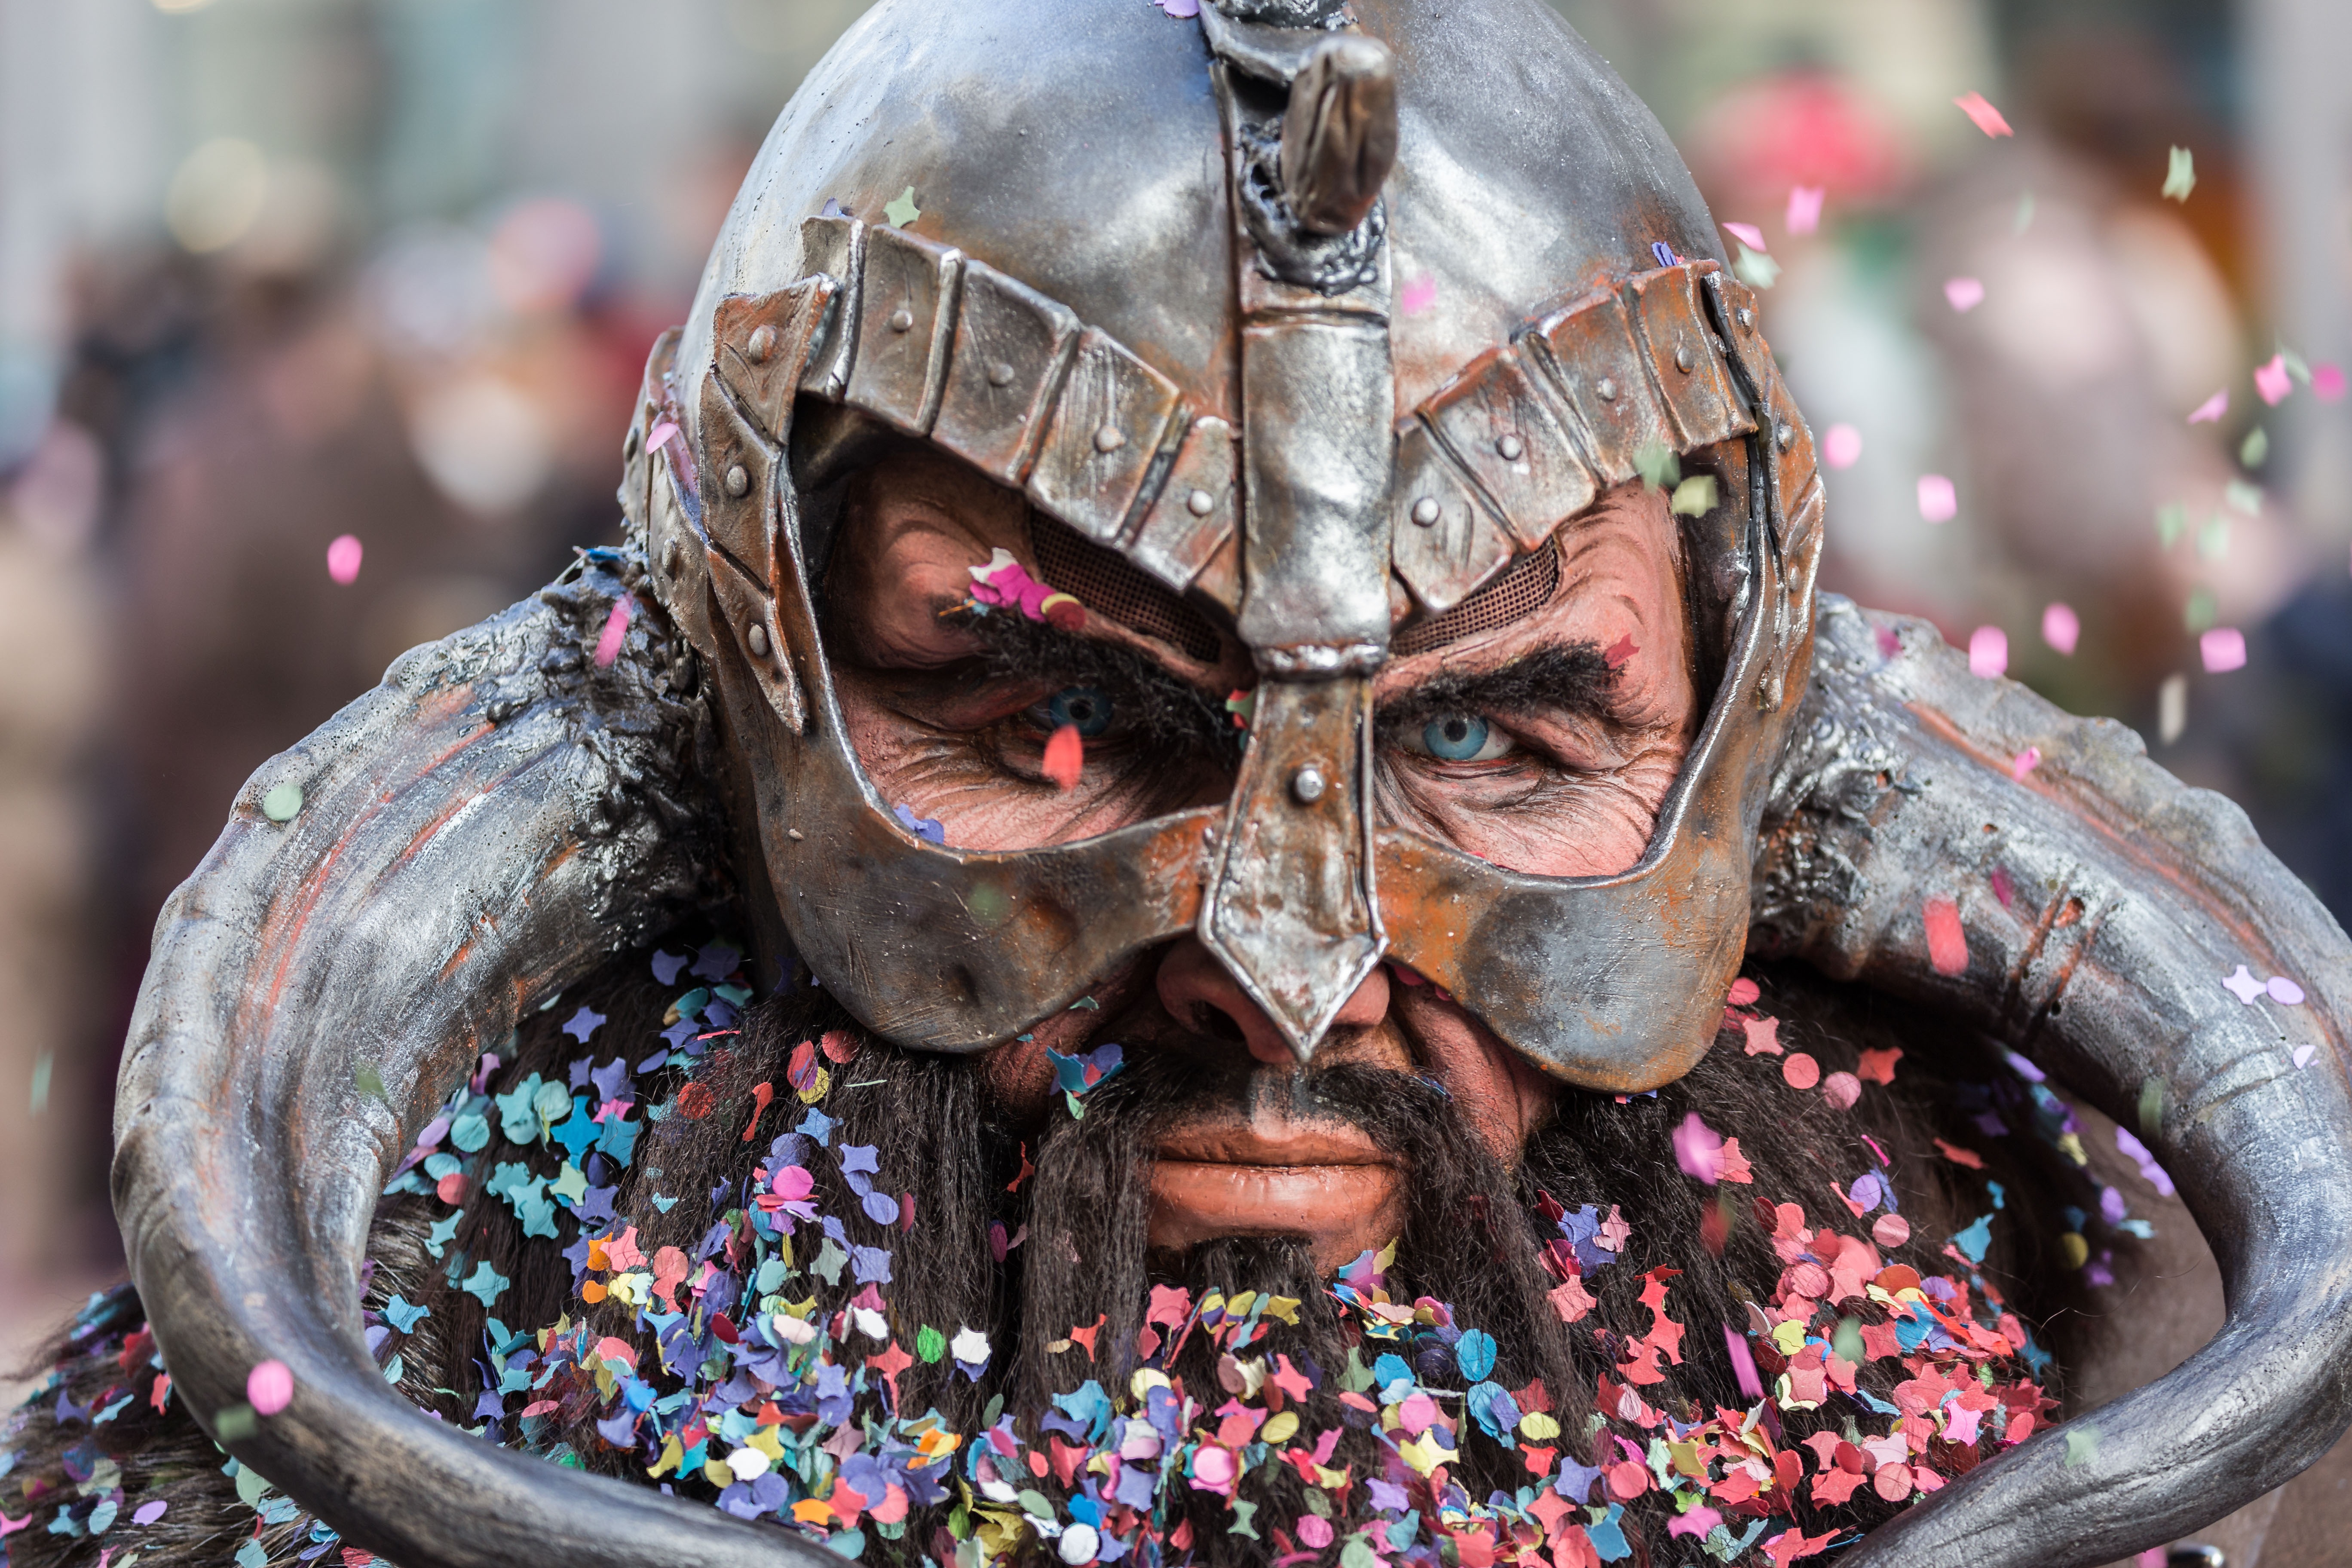 Обои люди, карнавал, 2015, фестиваль, маска, Люцерн, традиции - бесплатные картинки на Fonwall